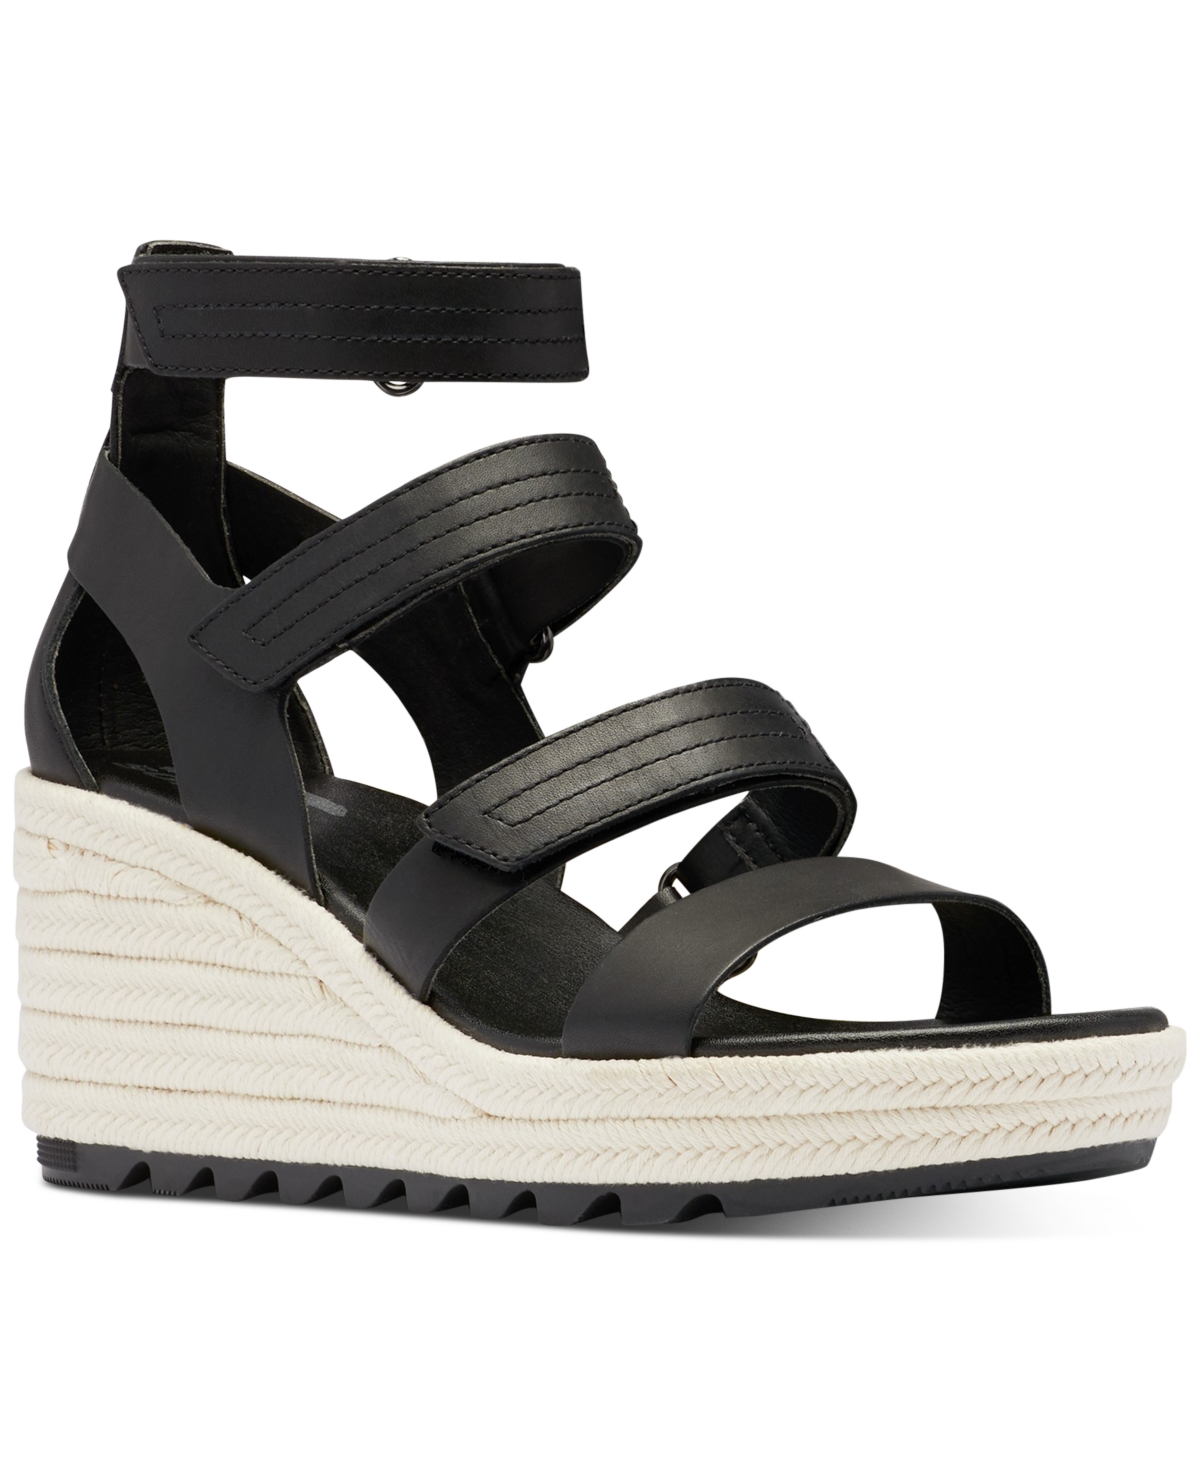 Size 9 SOREL Cameron Espadrille Wedge Sandal in Black/Chalk at Nordstrom